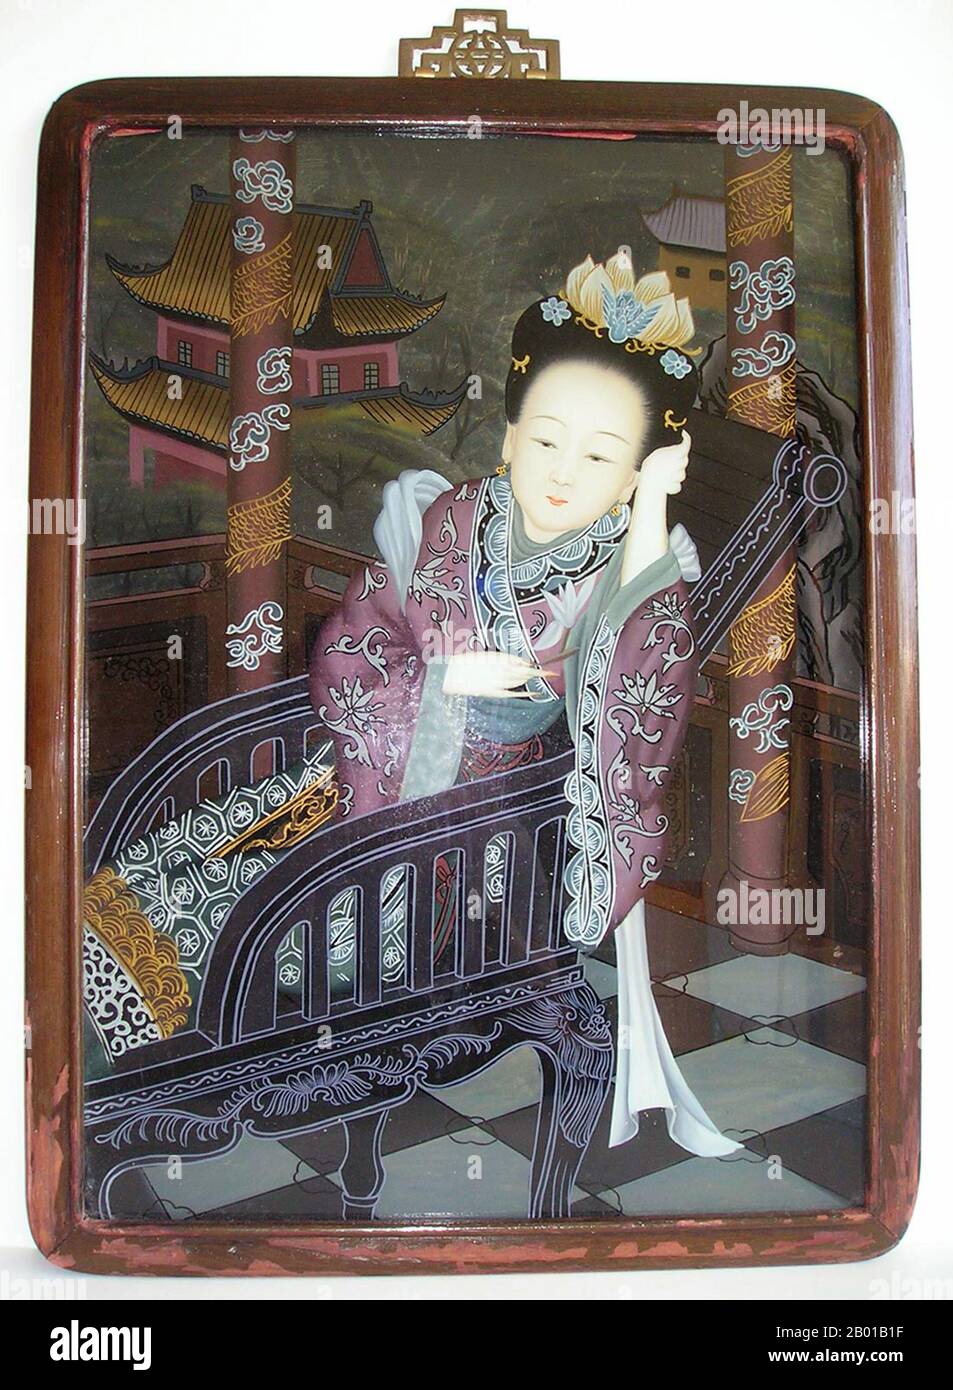 Chine: Peinture miroir d'une femme couché dans une chaise, fin de la dynastie Qing, c. 1840-1860. La peinture inversée sur verre est une forme d'art consistant à appliquer de la peinture sur un morceau de verre, puis à visualiser l'image en retournant le verre et en regardant à travers le verre à l'image. Banque D'Images